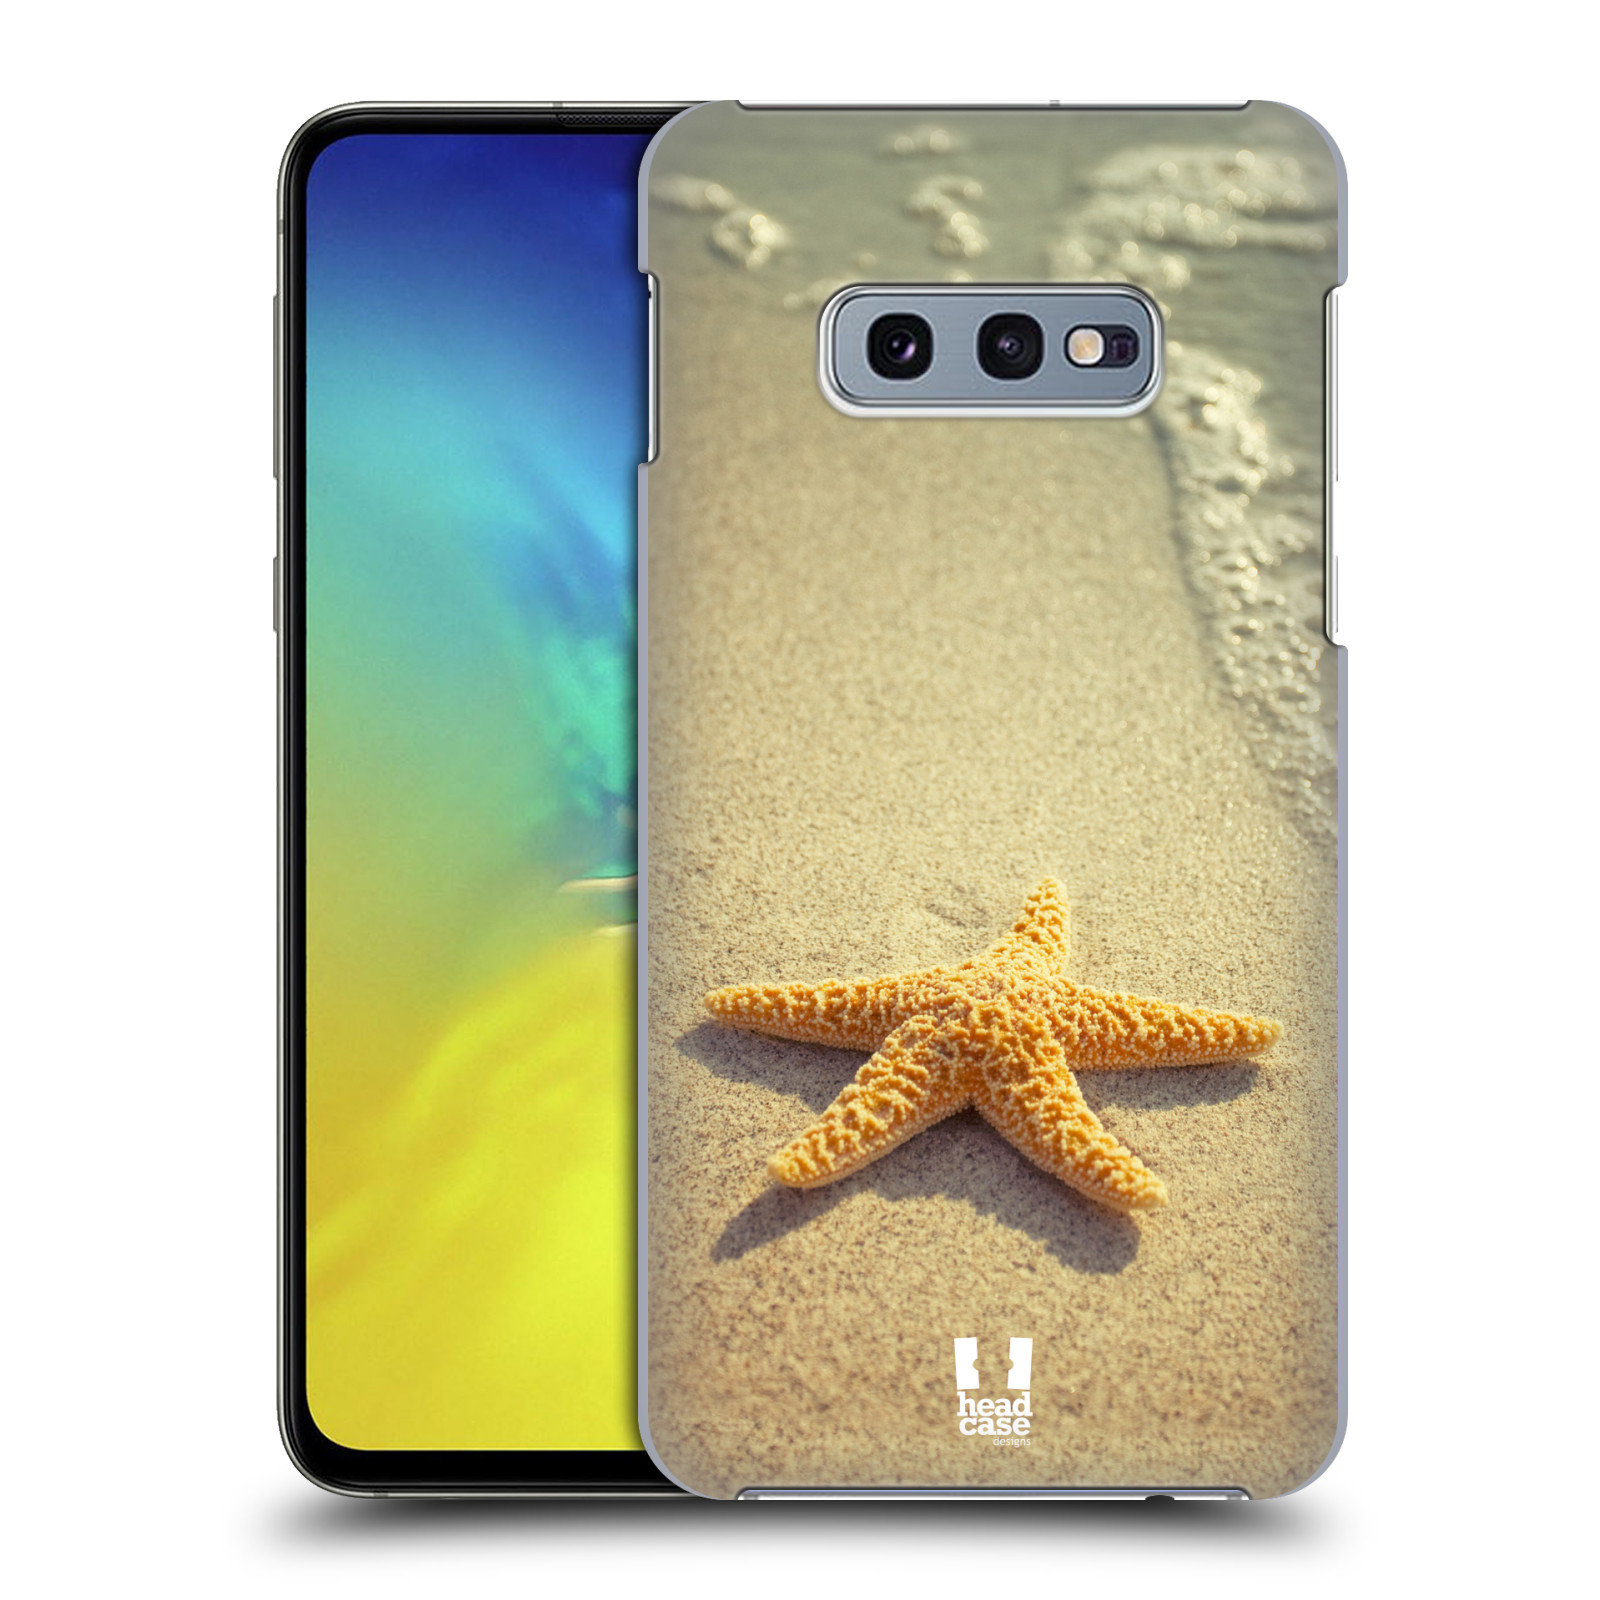 Pouzdro na mobil Samsung Galaxy S10e - HEAD CASE - vzor slavná zvířata foto hvězda na břehu